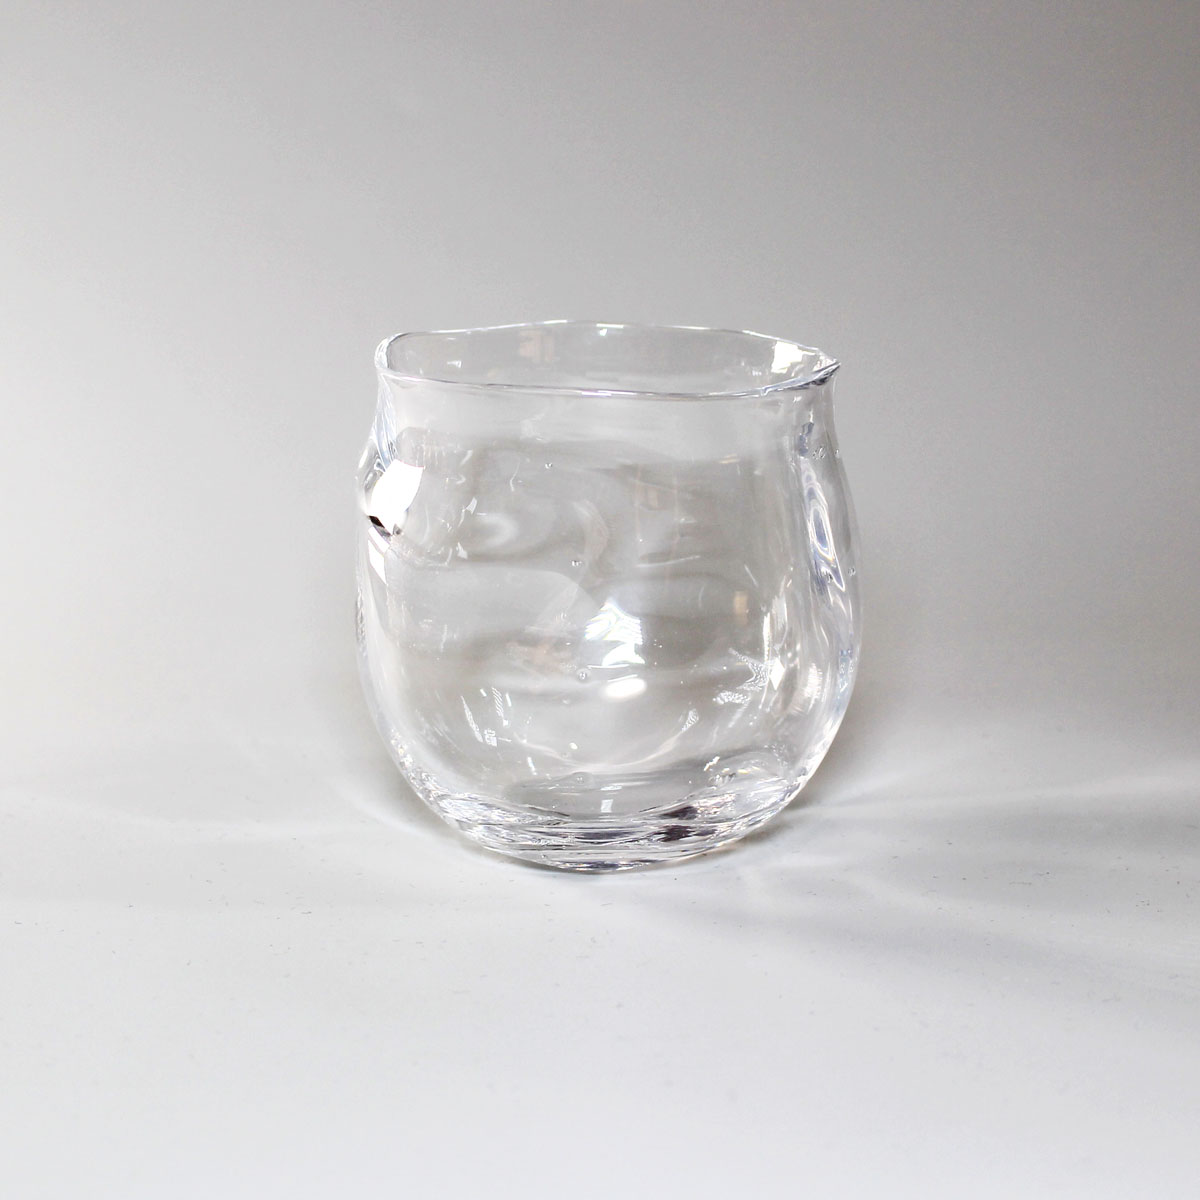 glasscalico ミナモ 丸型 ロックグラス ウイスキー 焼酎 カクテル グラス グラスキャリコ ハンドメイド グラス おしゃれ 来客用 ギフト プレゼント